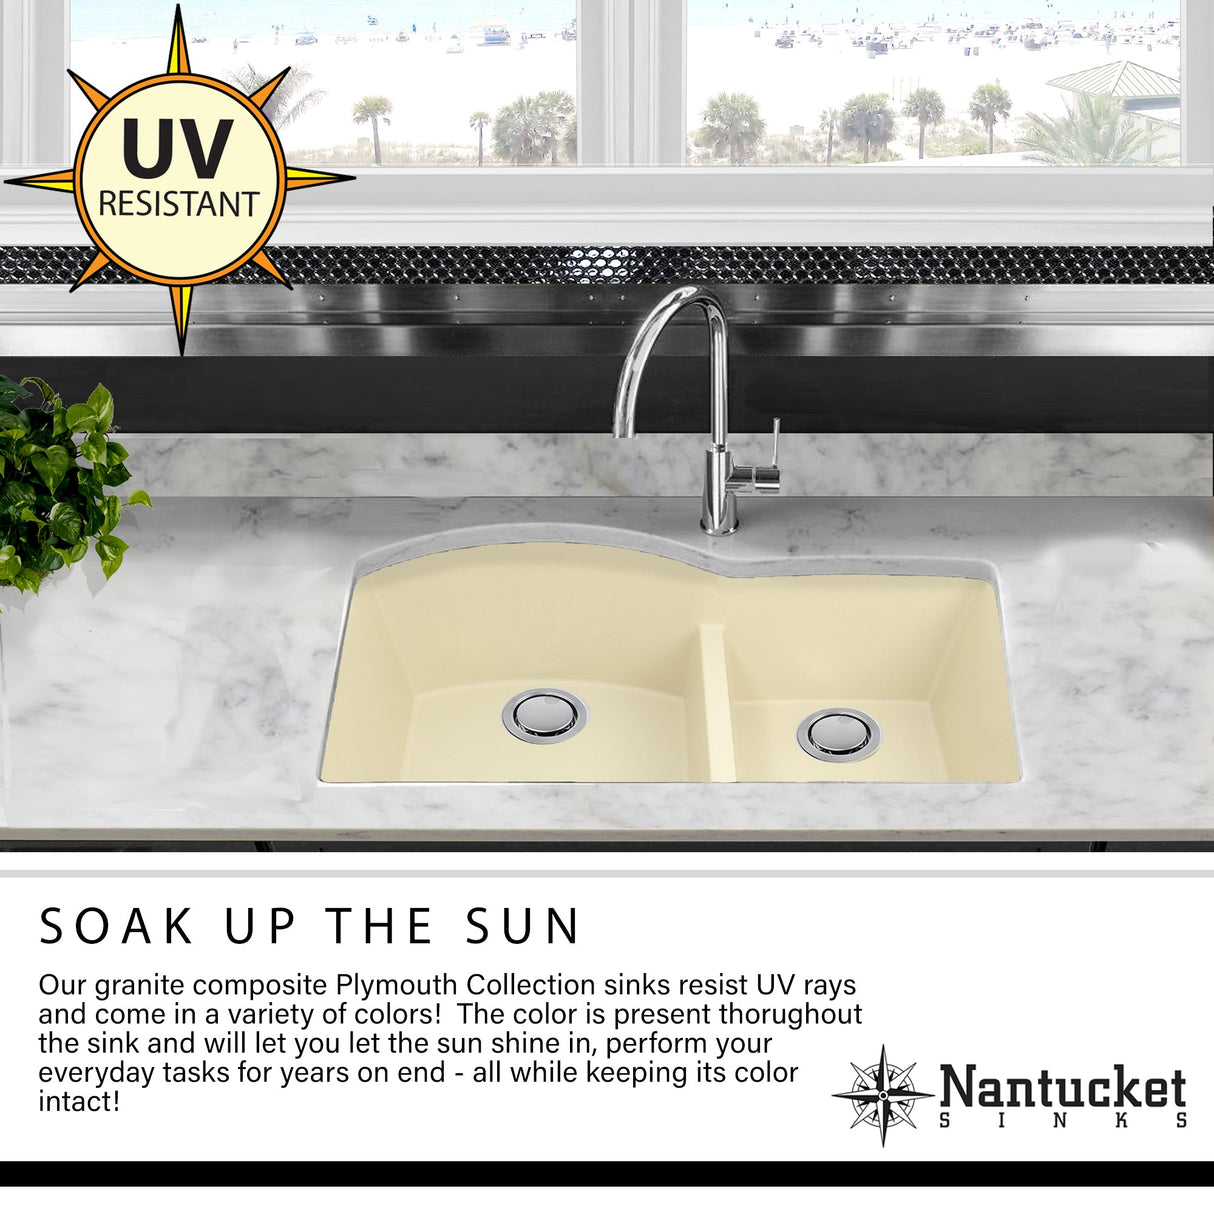 Nantucket Sinks 33-inch Undermount Granite Composite Sink in Titanium